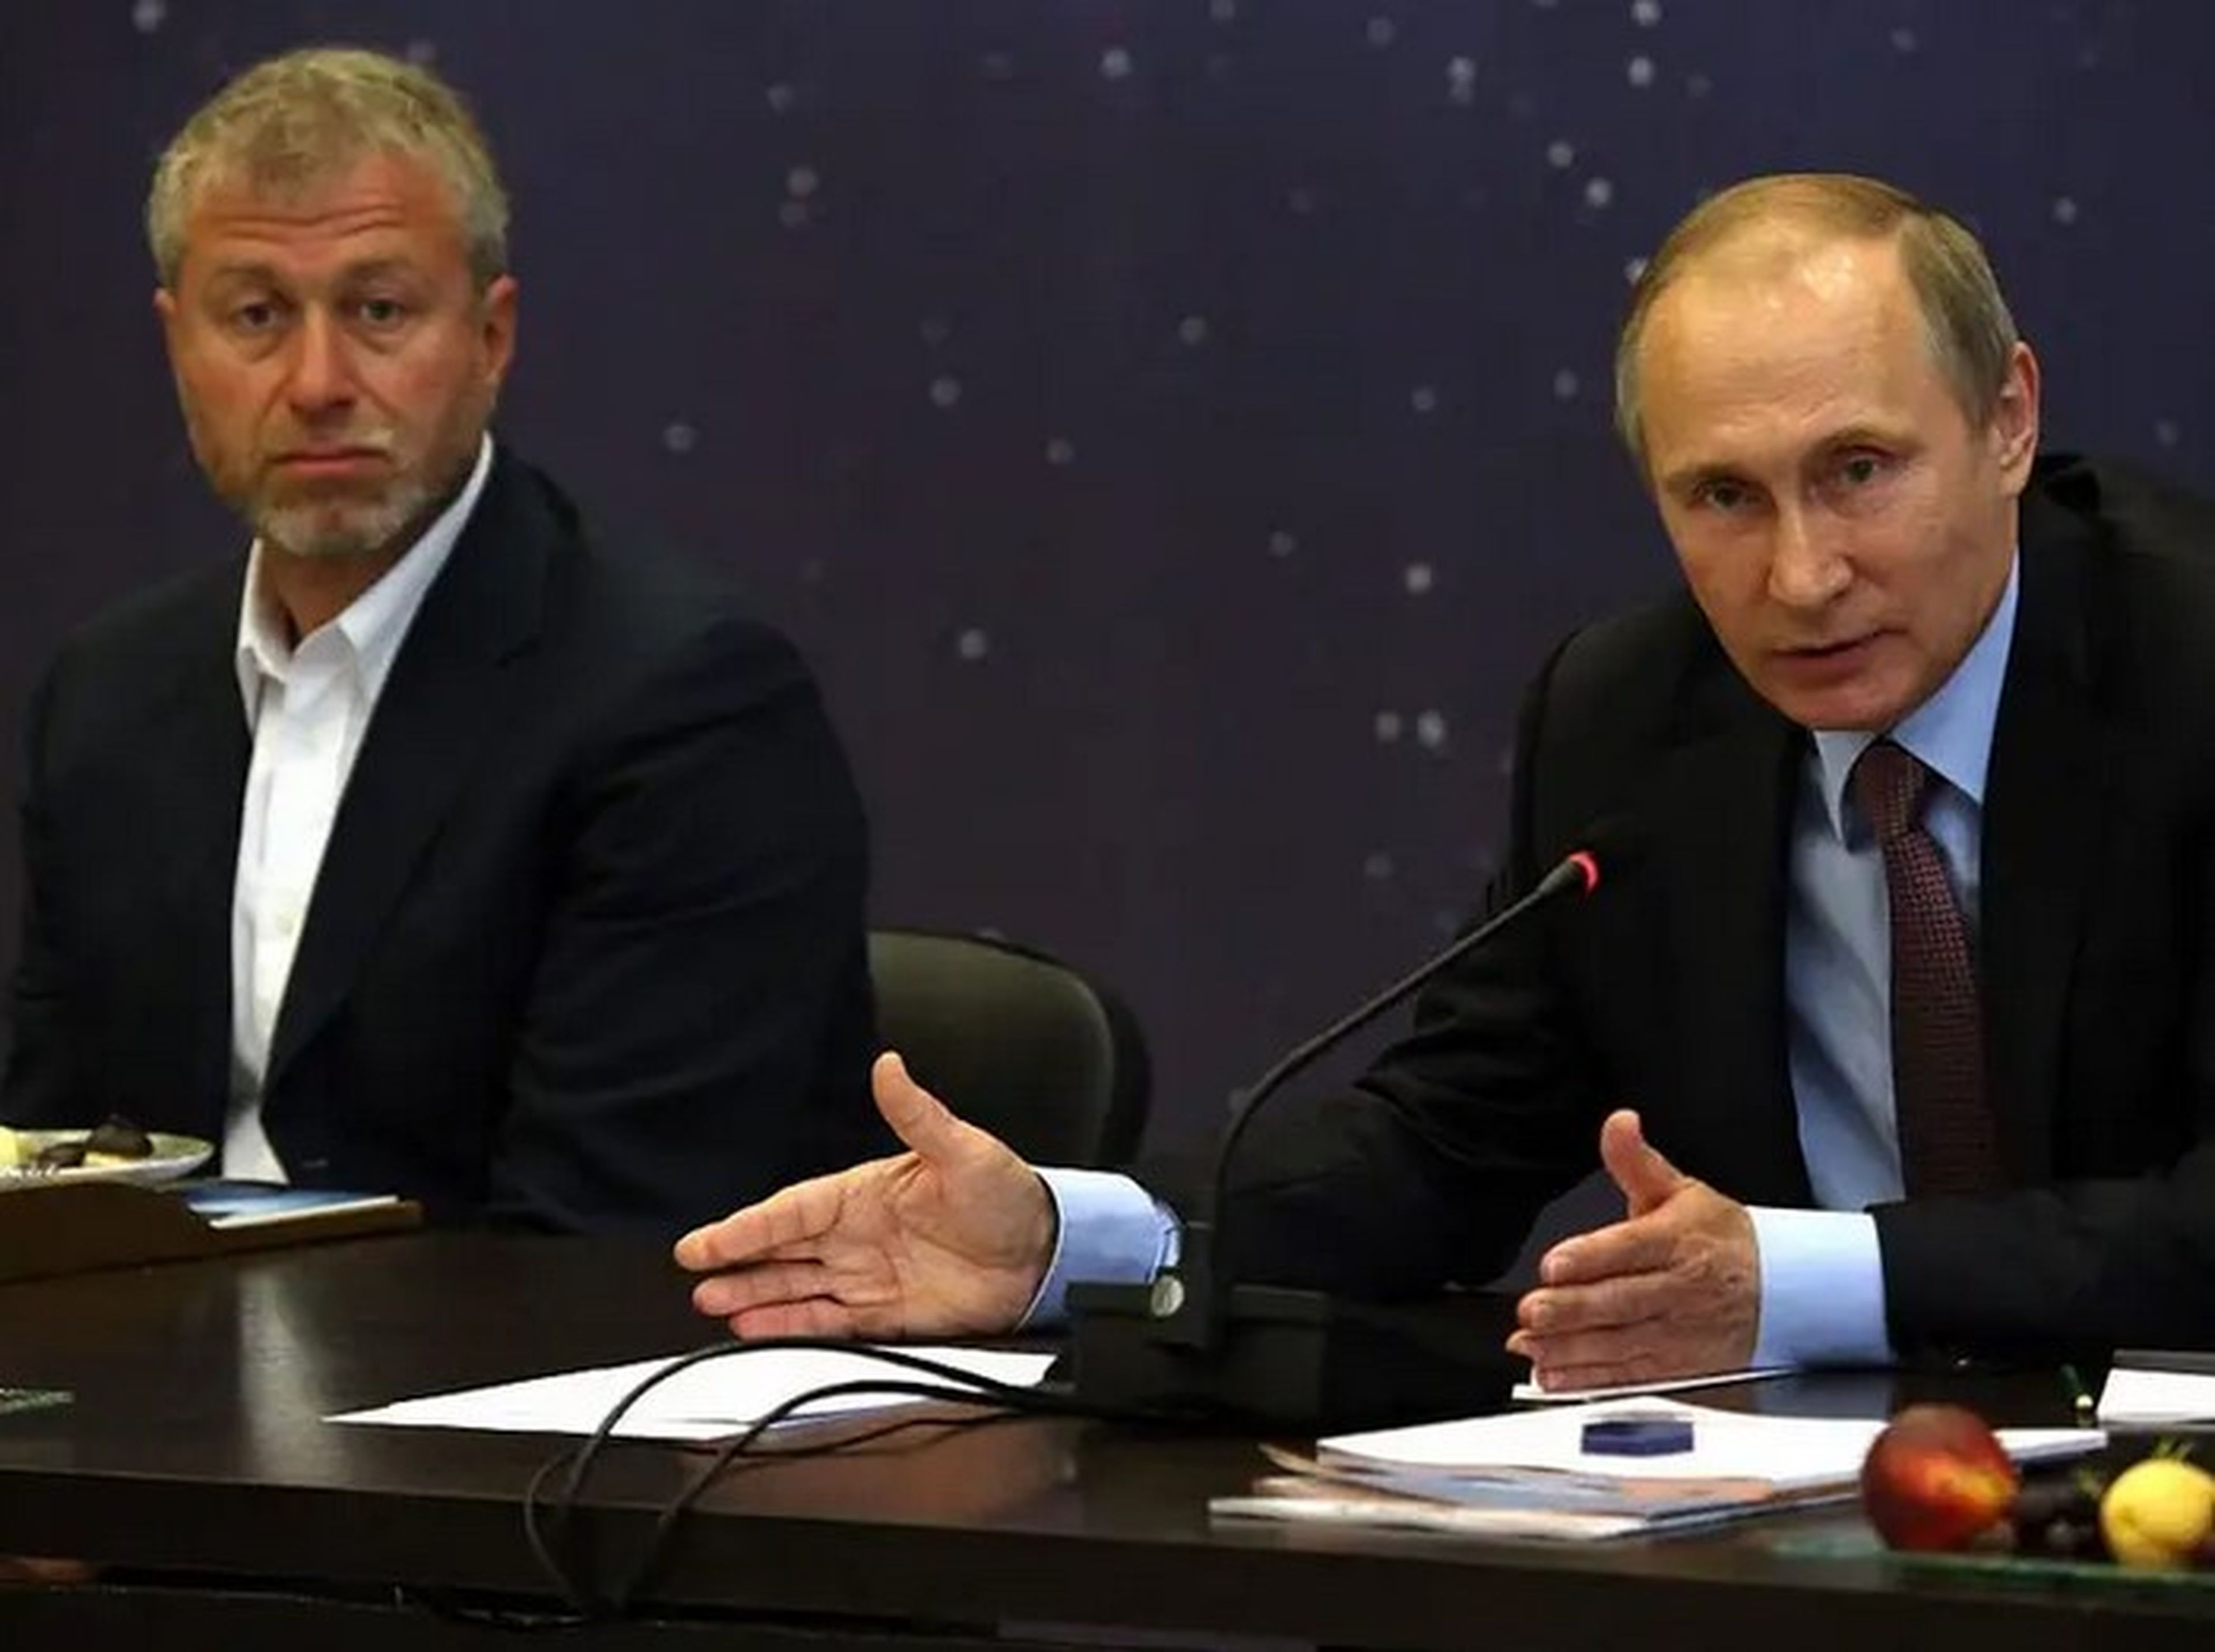 El presidente ruso, Vladimir Putin (dcha.), habla mientras el multimillonario y empresario Roman Abramovich (izq.) le observa durante una reunión con importantes empresarios.